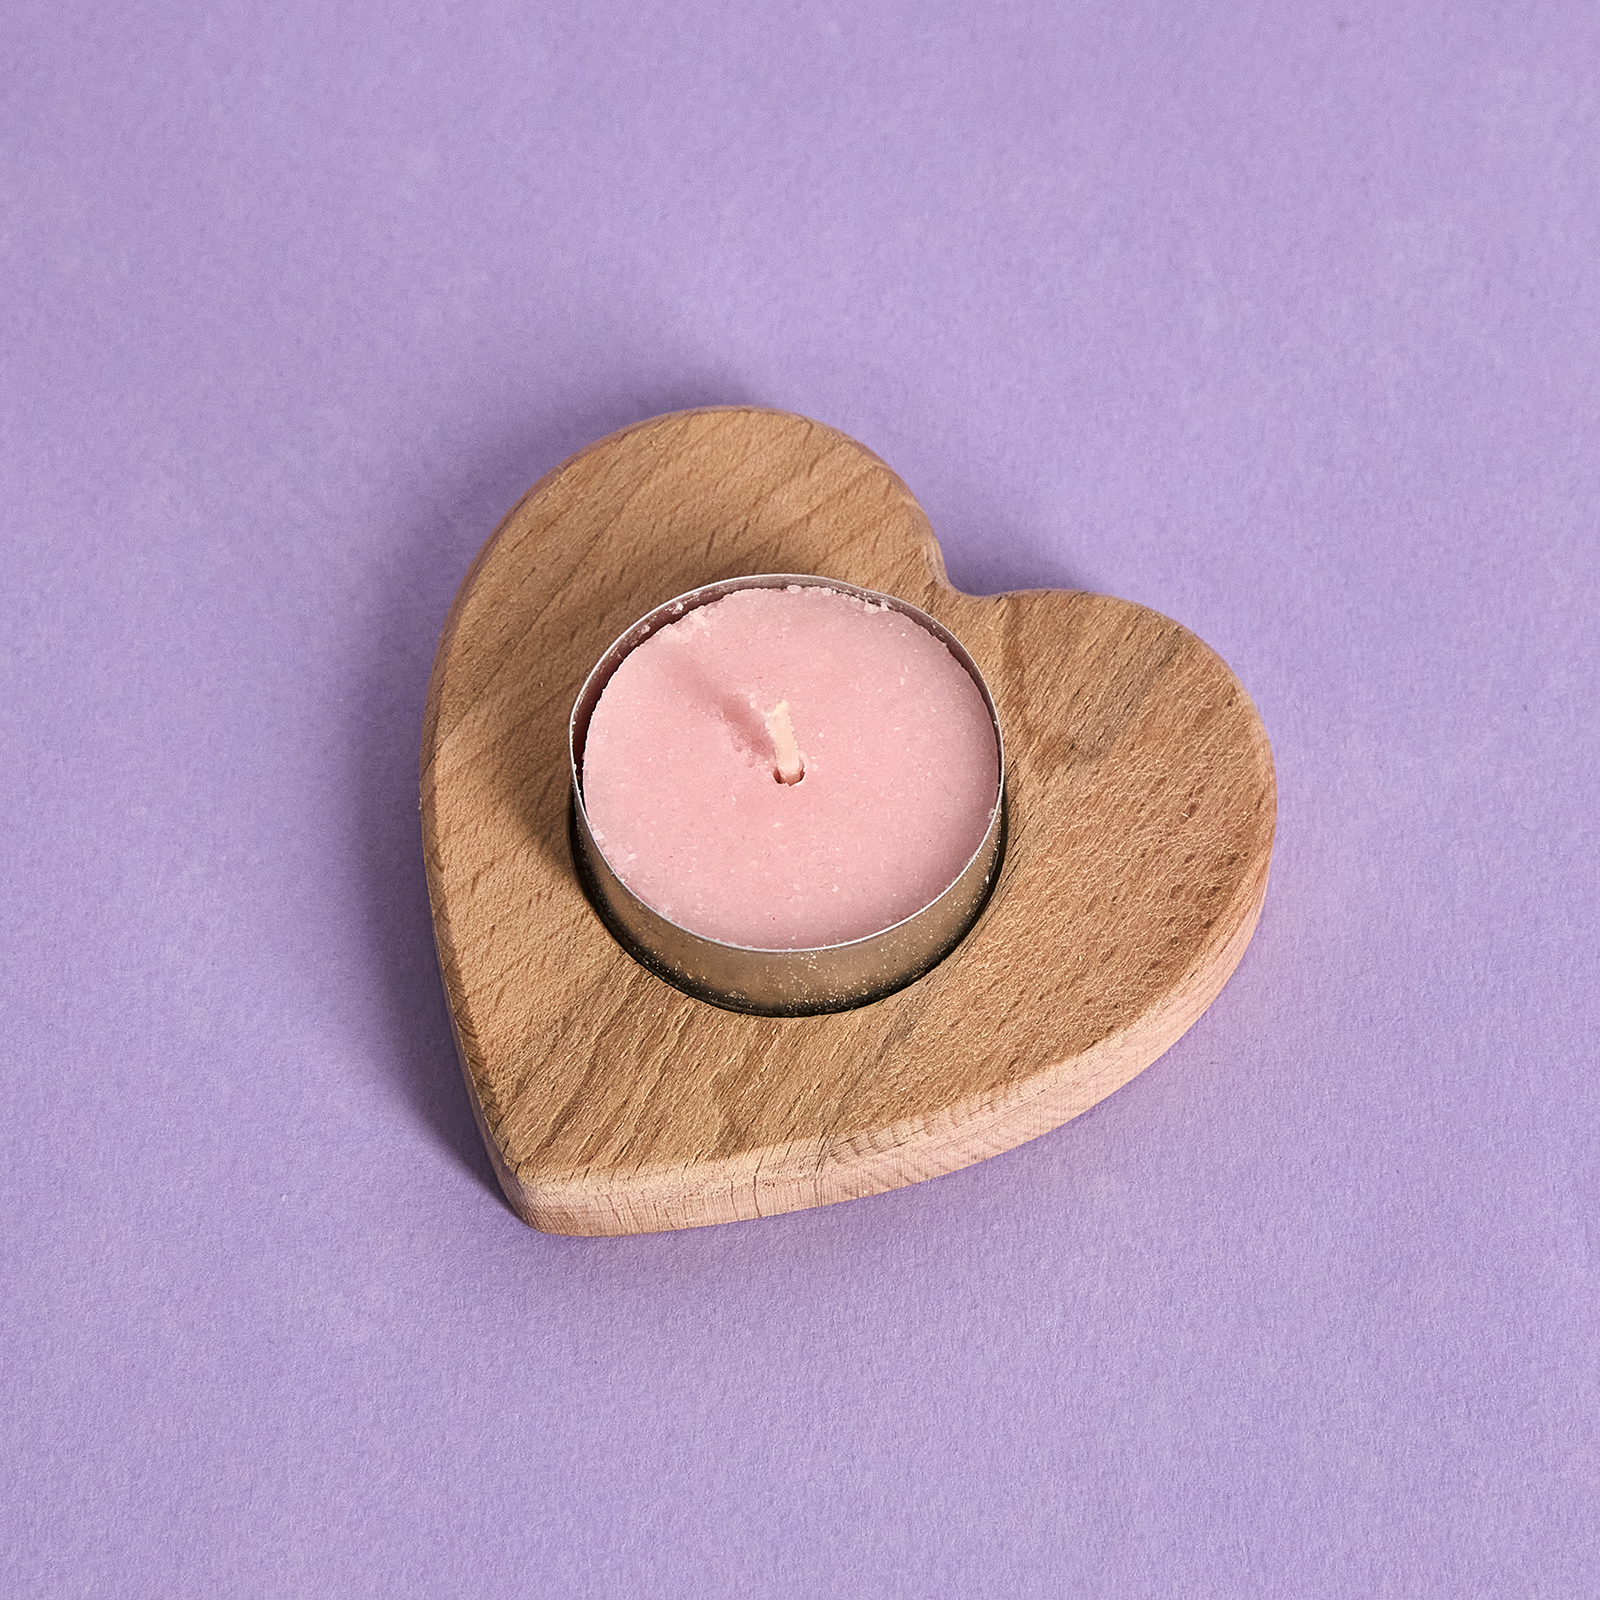 Подсвечник с розовой свечой Heartbeat декоративный подсвечник орех со свечой манго